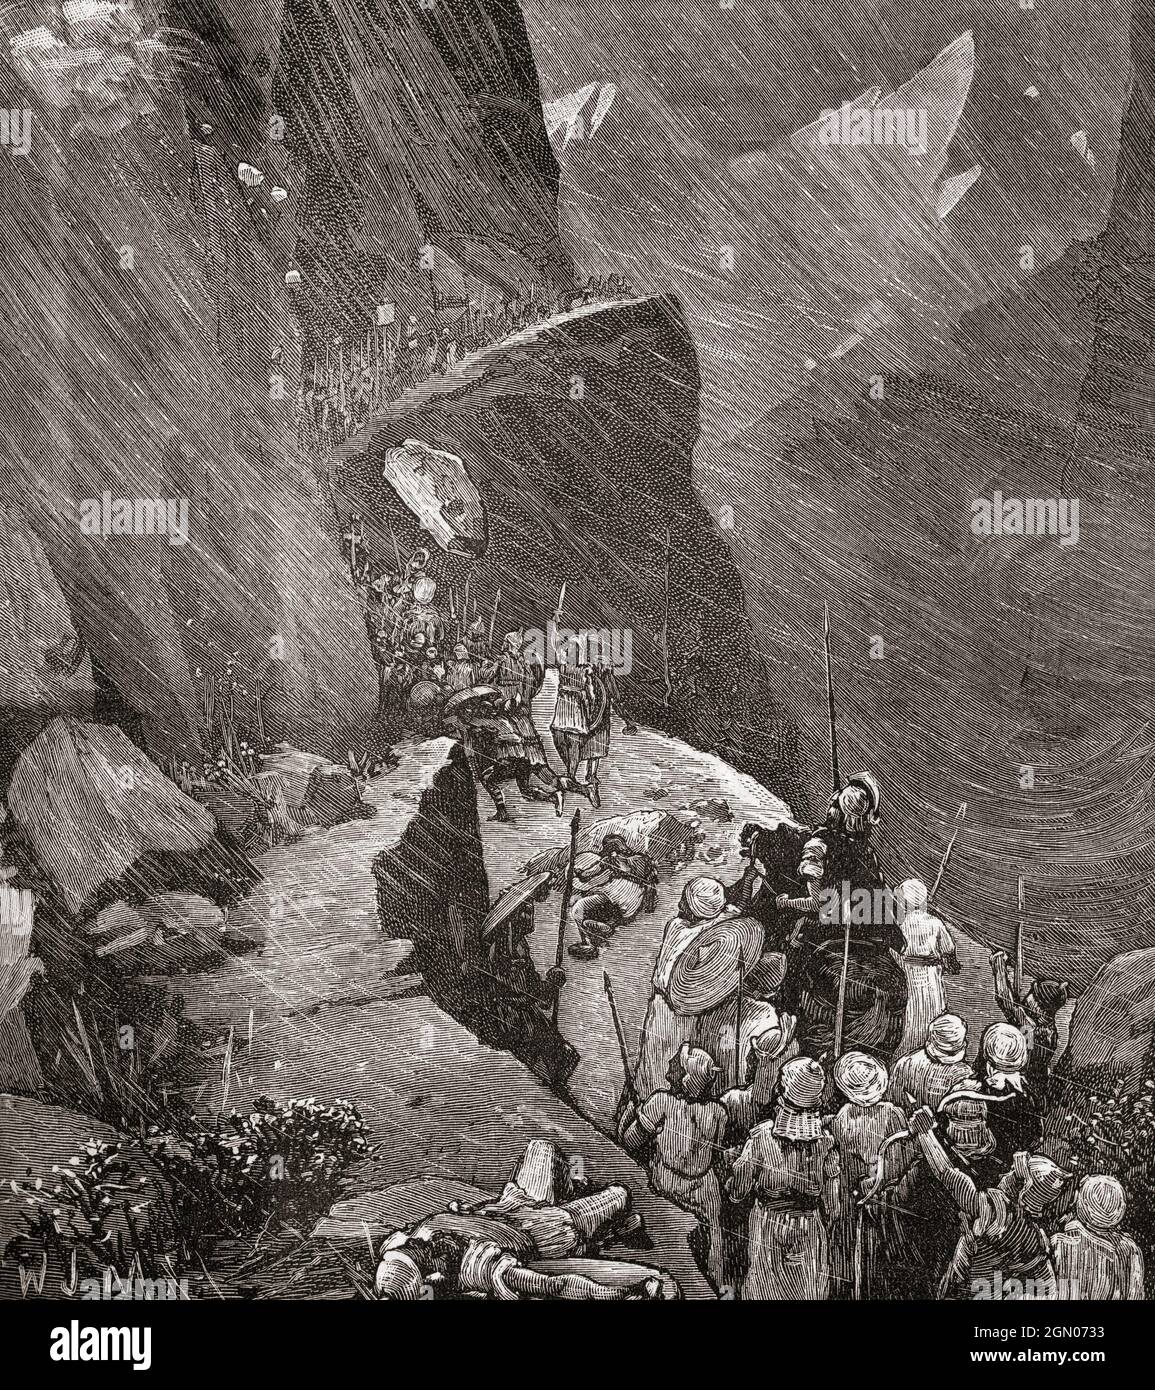 Hannibal führte seine karthagische Armee über die Alpen und nach Italien, 218 v. Chr. während des Zweiten Punischen Krieges. Aus Cassells Illustrated Universal History, veröffentlicht 1883. Stockfoto